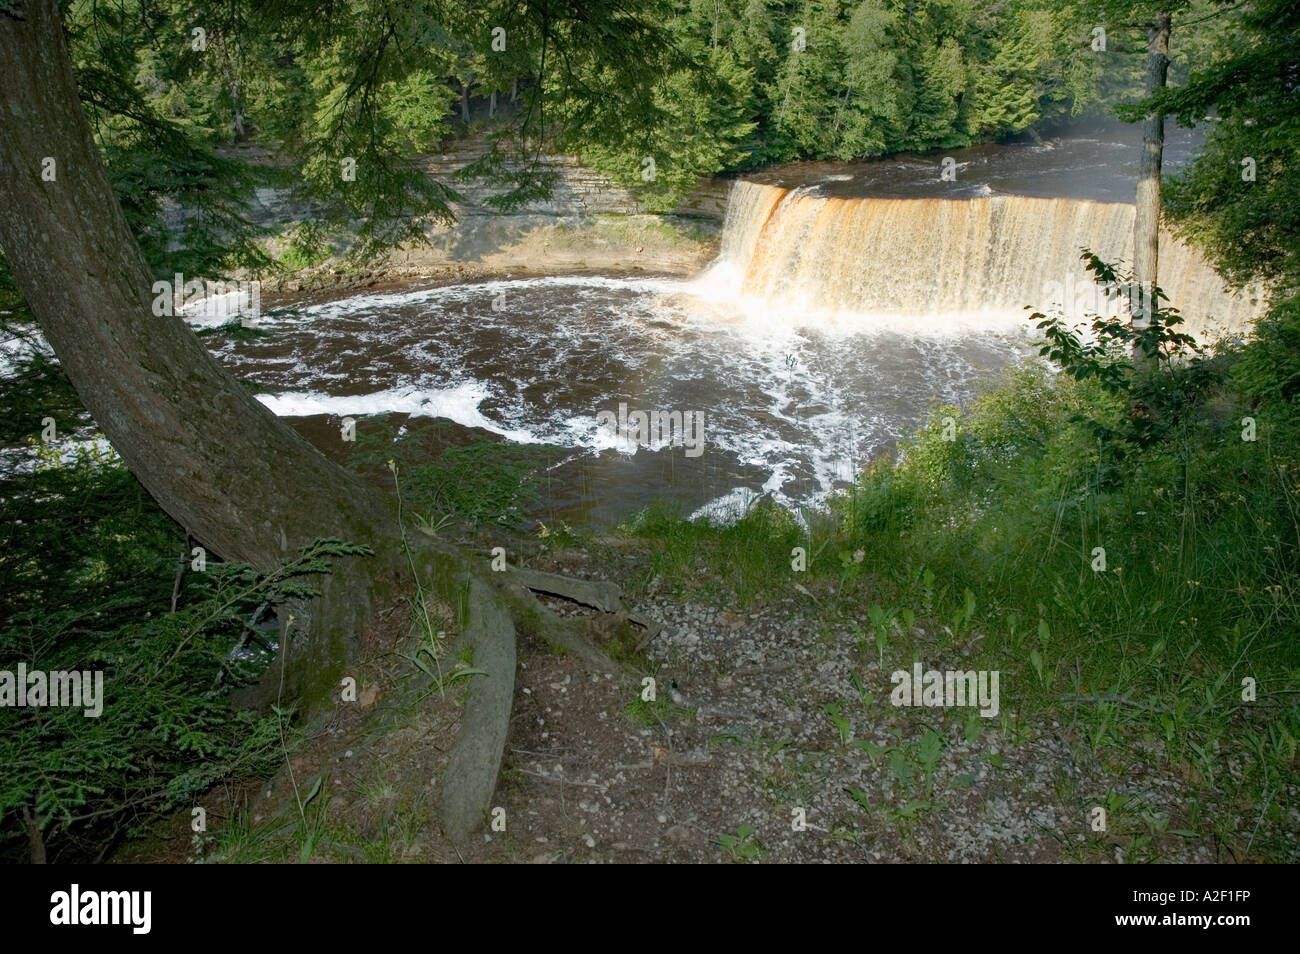 P32 153 Tomaia Tahquamenon Falls in alto Penninsula del Michigan con albero piegato - Radici - Brow Foto Stock